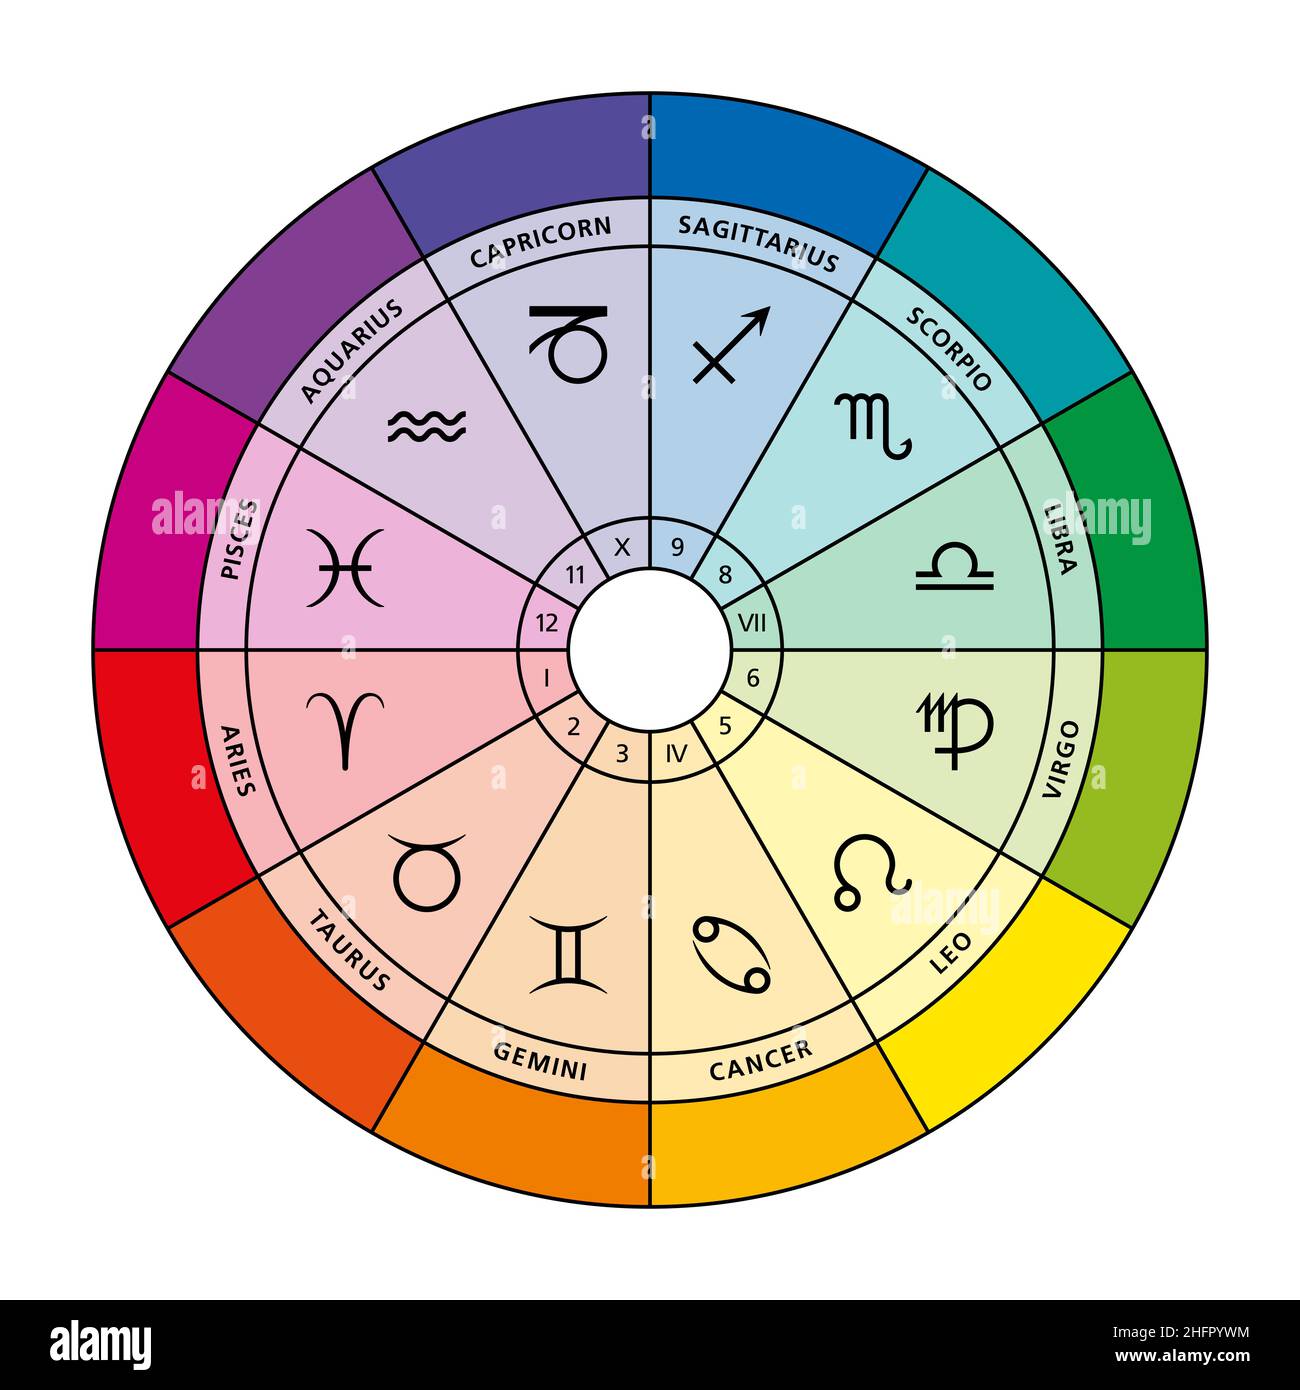 Les signes d'étoiles et leurs couleurs dans le zodiaque.Carte astrologique montrant douze signes d'étoiles, leurs maisons et leurs couleurs d'appartenance.Roue du zodiaque. Banque D'Images